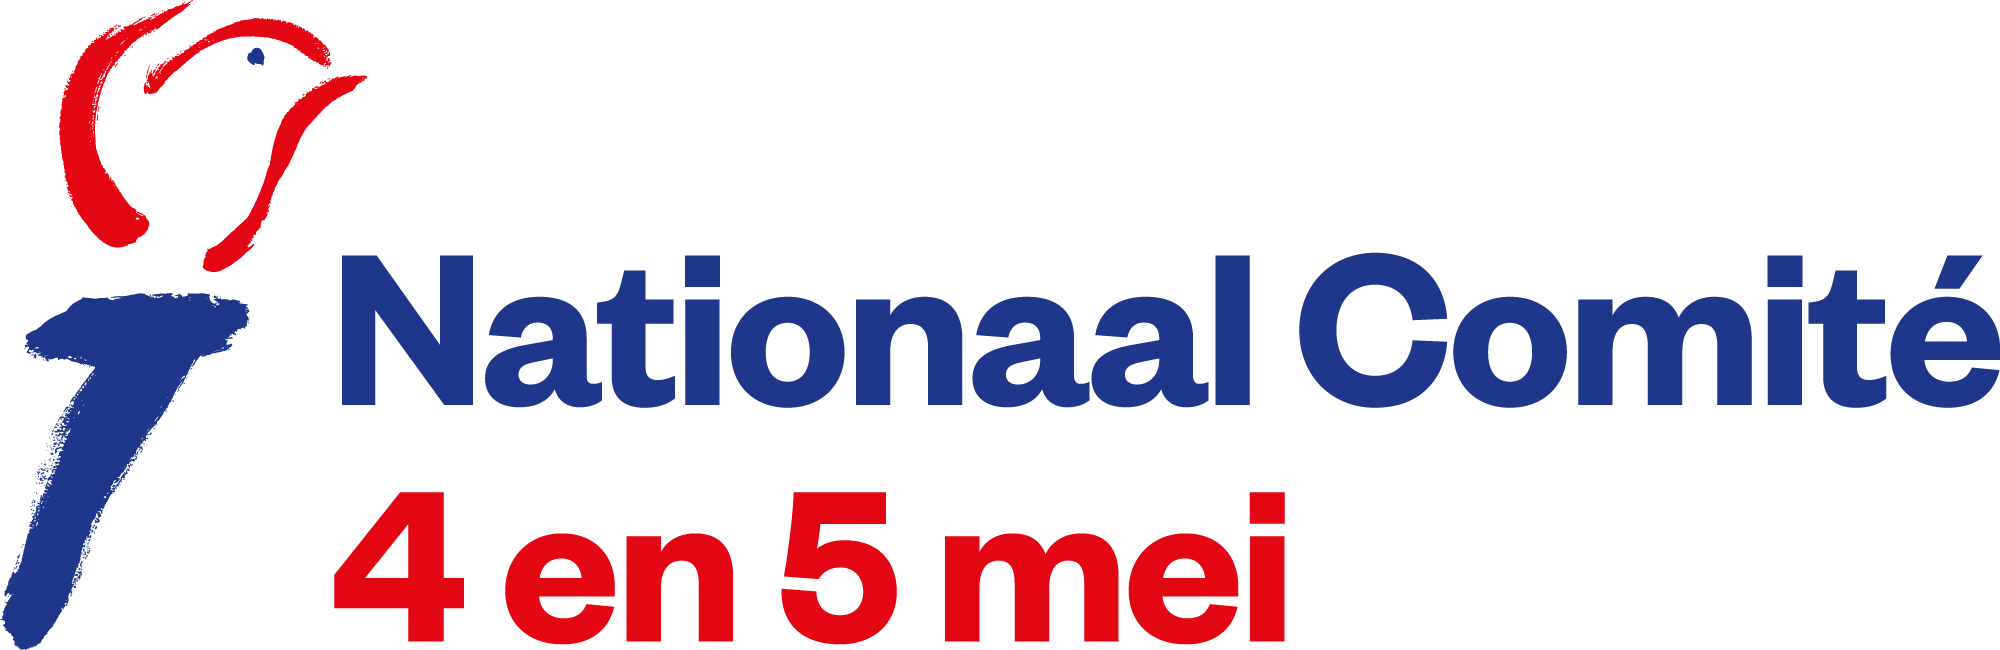 '4 ve 5 Mayıs Ulusal Komite' logosu.